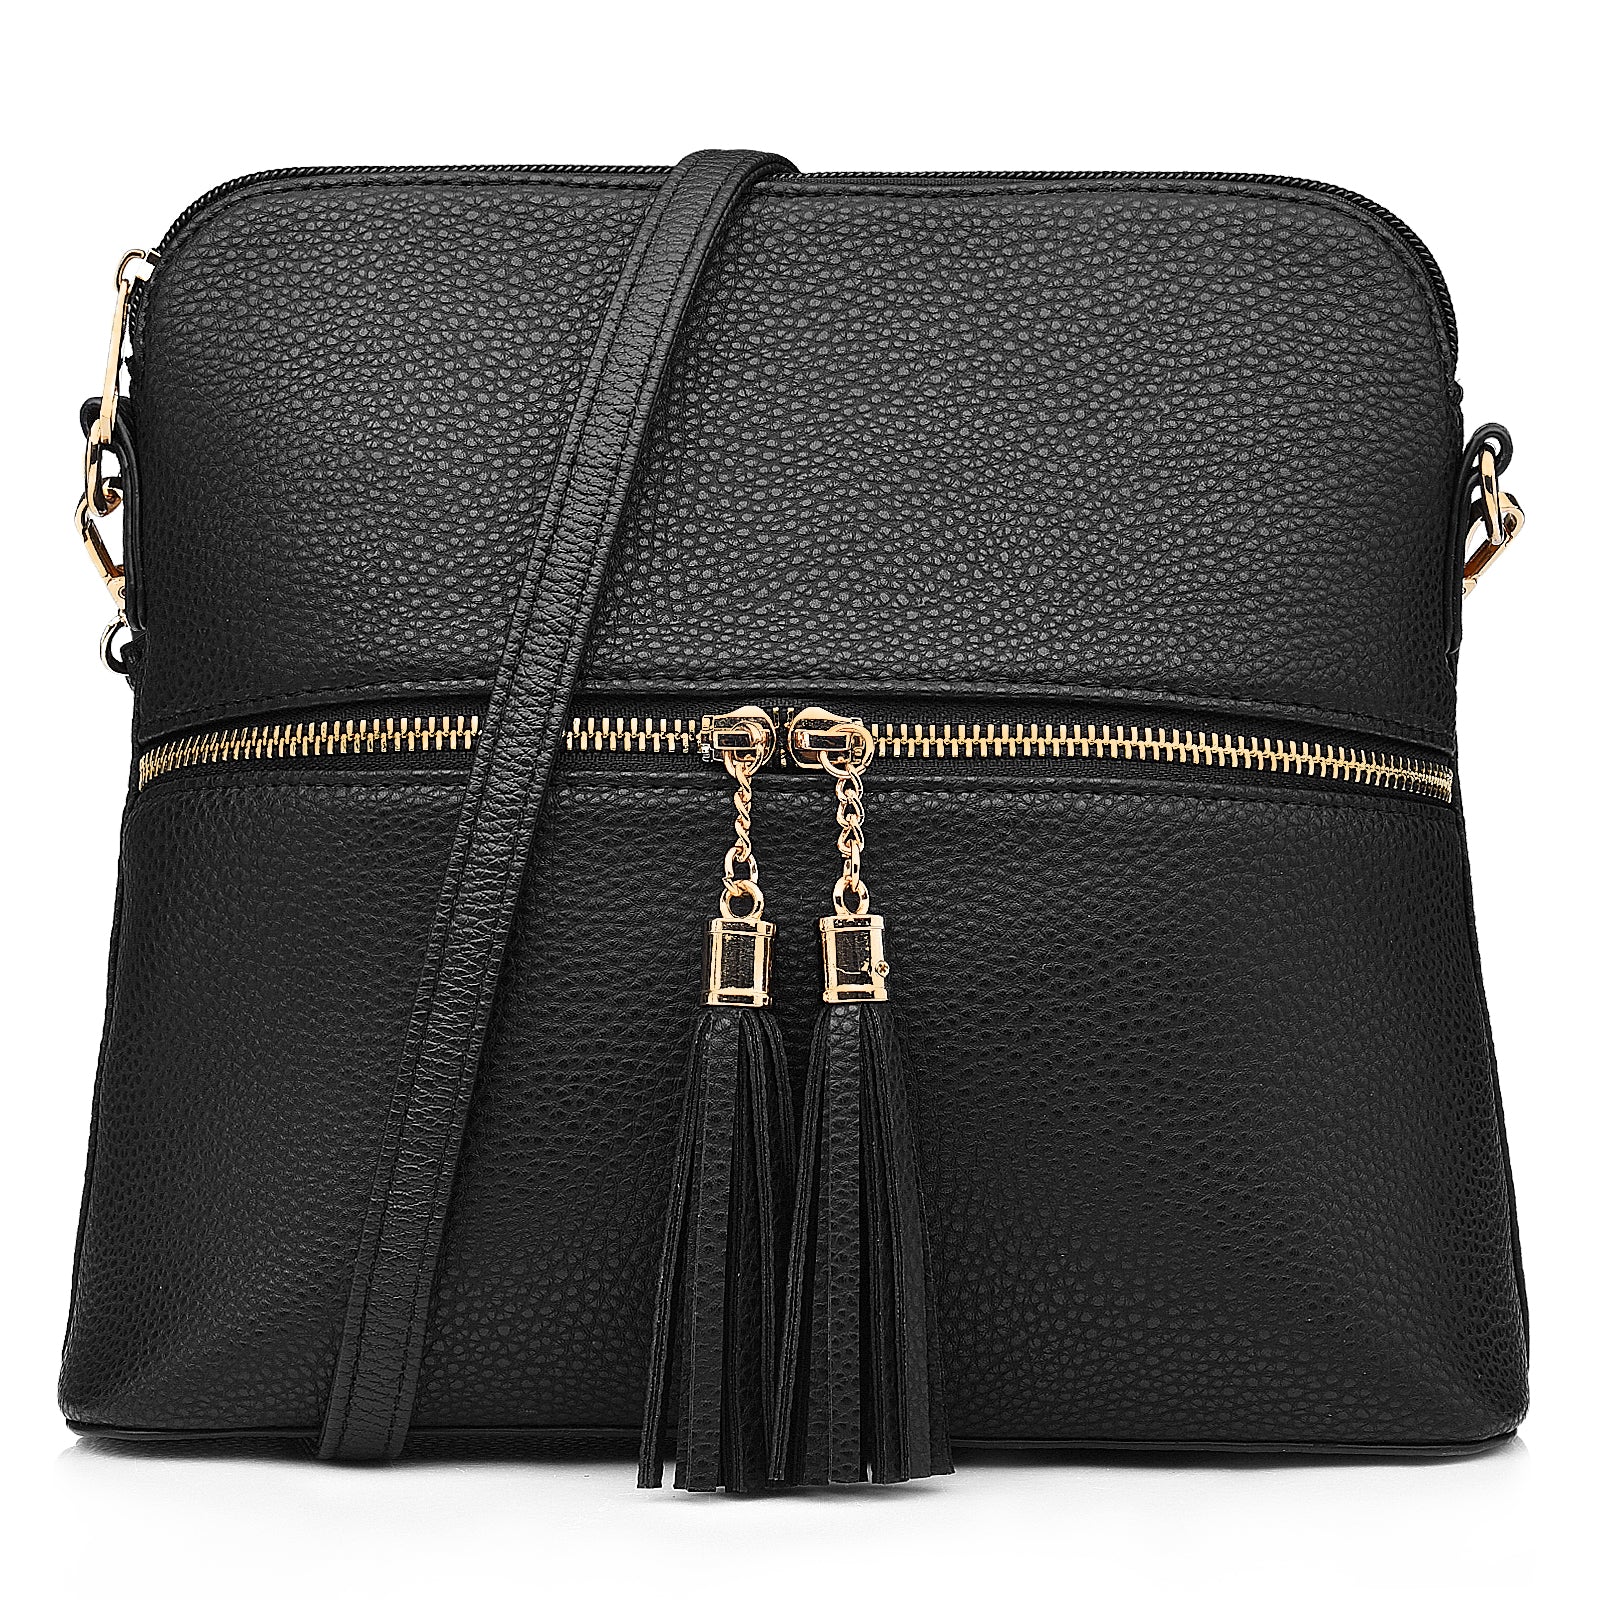 Messenger Crossbody Bag for Women - PU Leather Fashion Women Handbag Shoulder Bag Pocketbook Ladies Leather Satchel Tote with Adjustable Shoulder Strap - Black